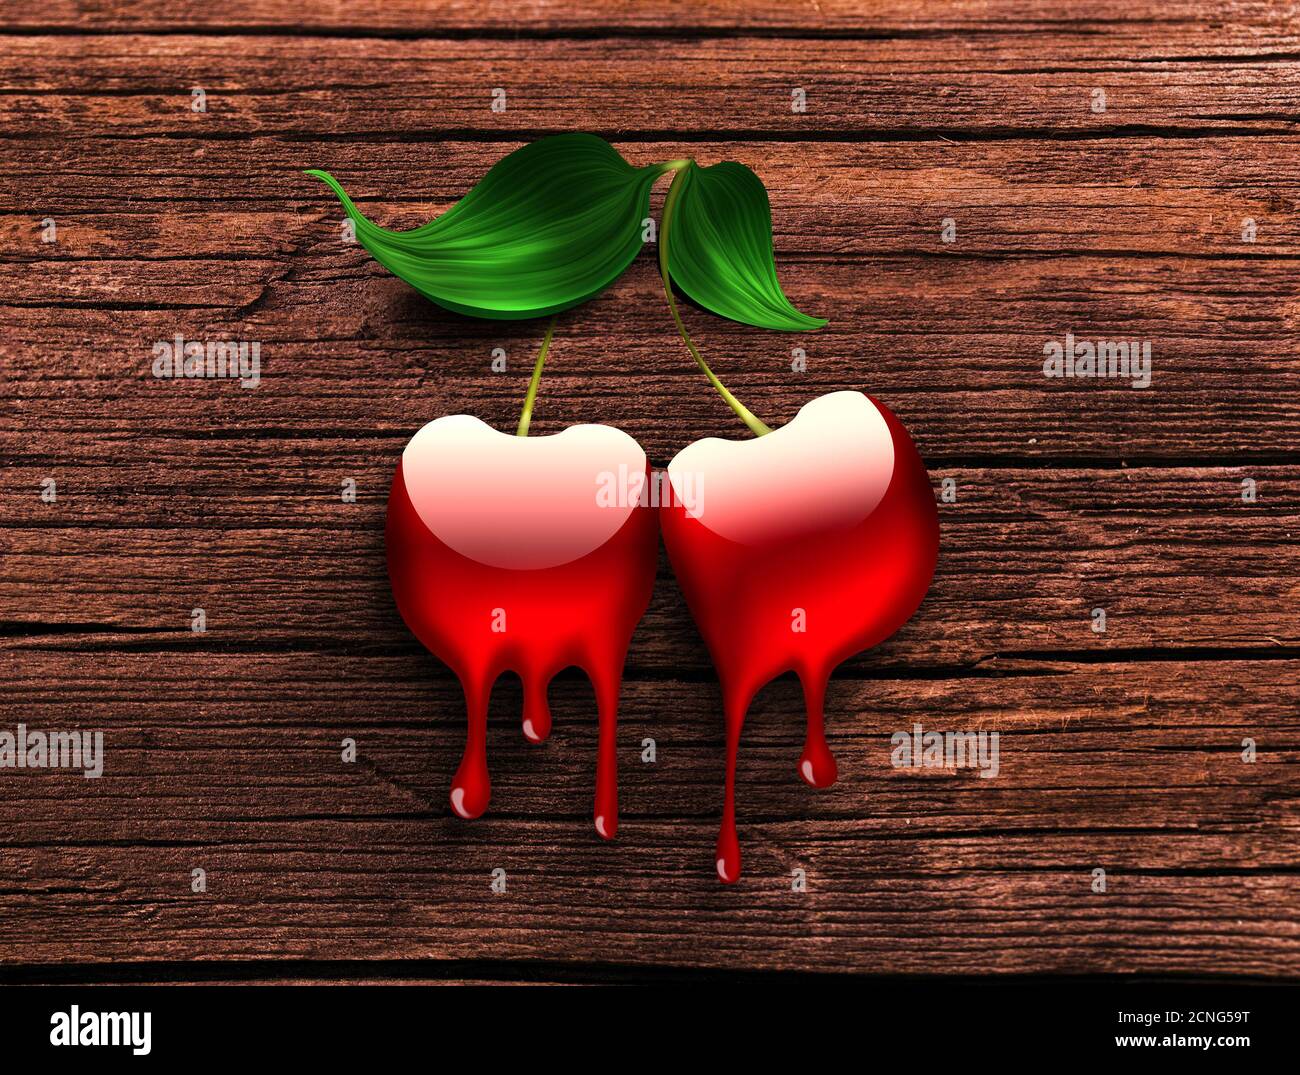 dripping cherry Stock Photo